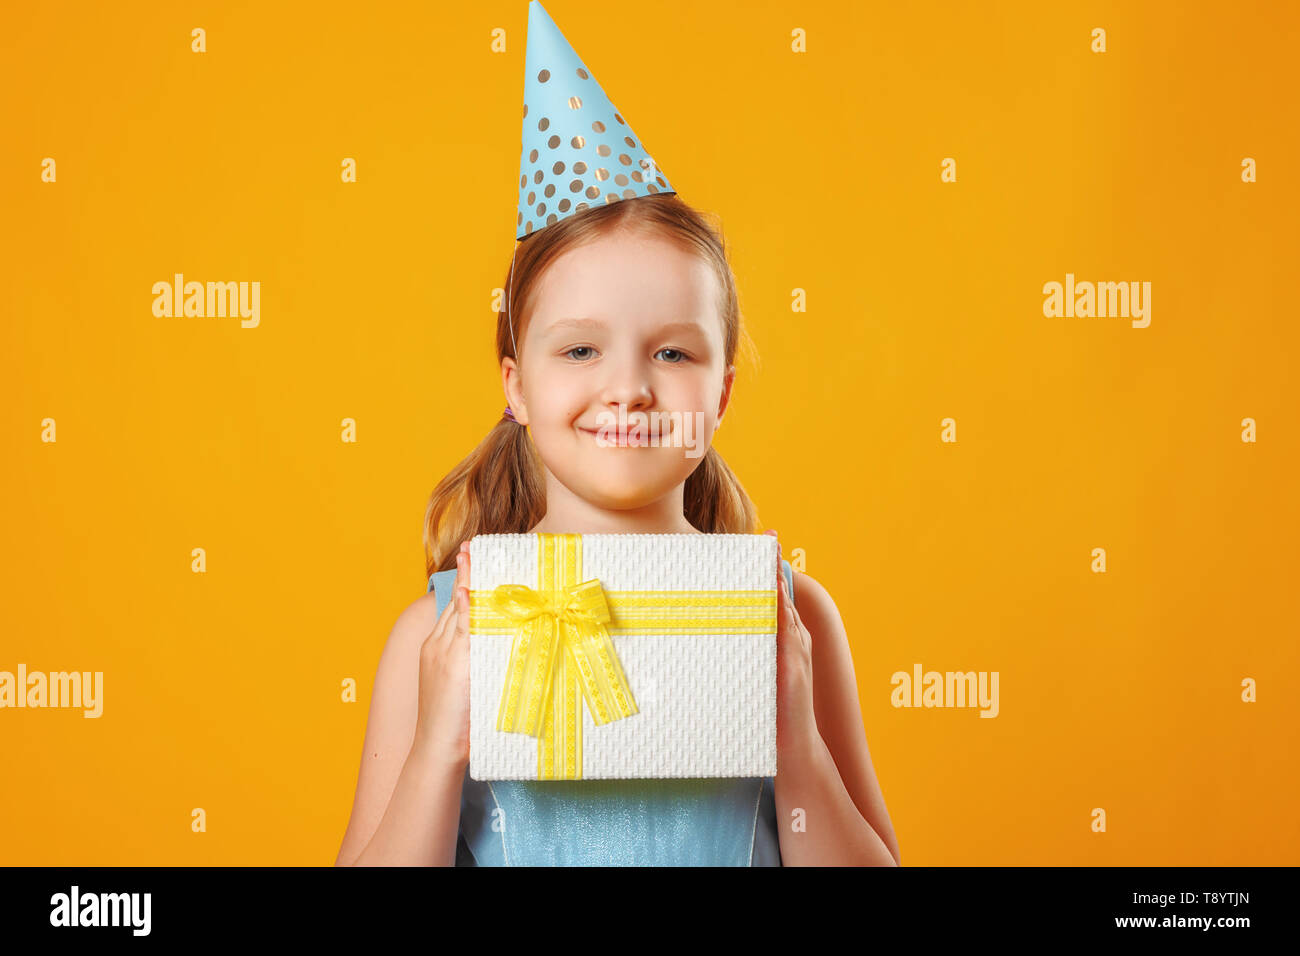 Fröhliches kleines Mädchen feiert Geburtstag. Das Kind hält einen Kasten mit einem Geschenk. Eine Party. Closeup Portrait auf gelben Hintergrund. Stockfoto